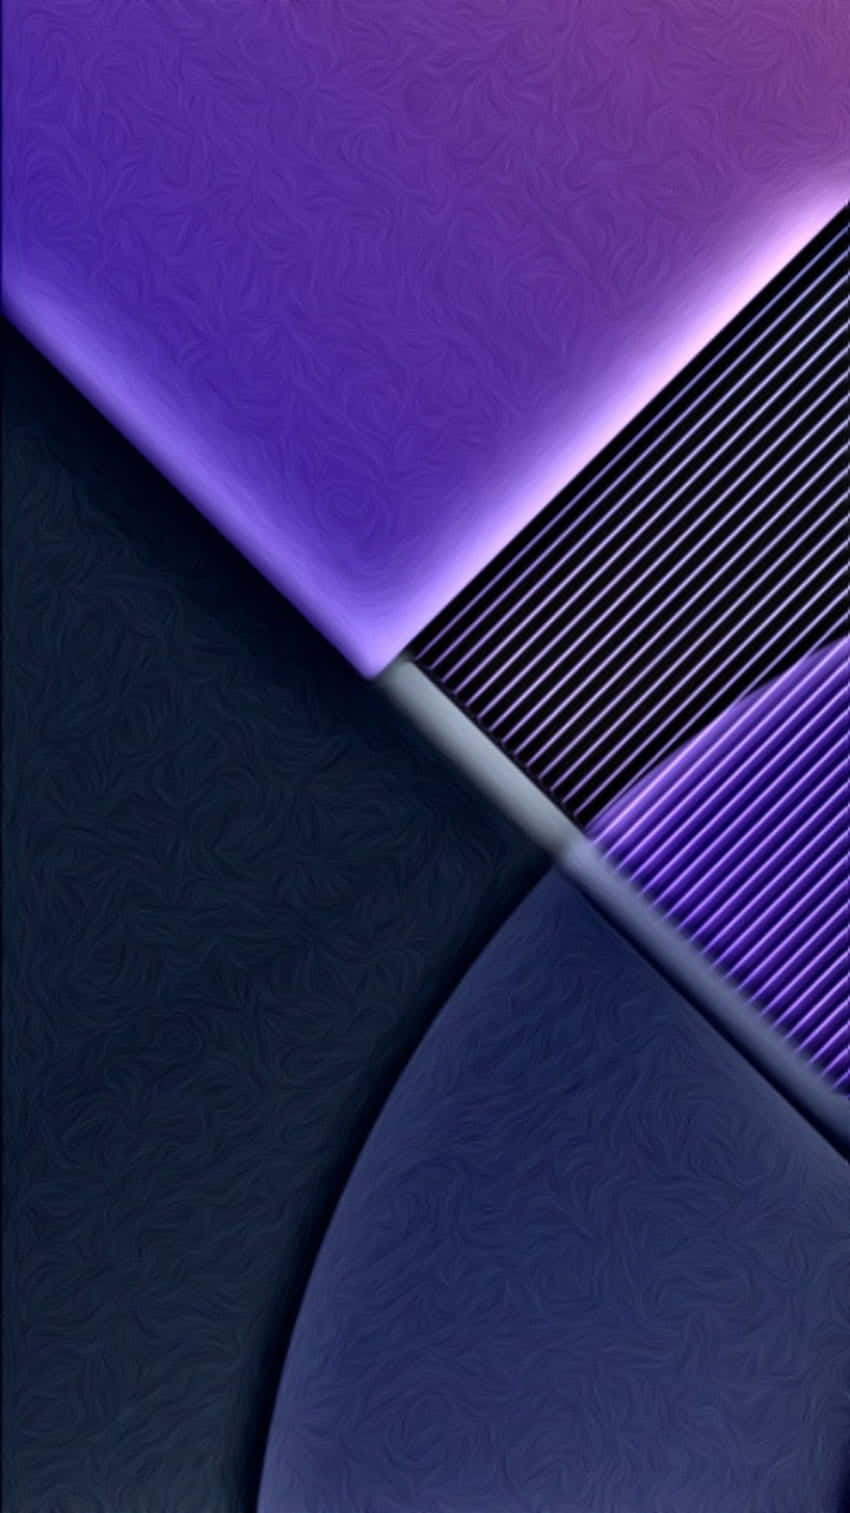 Einhintergrund In Violett Und Schwarz Mit Einem Violett-schwarz-design. Wallpaper